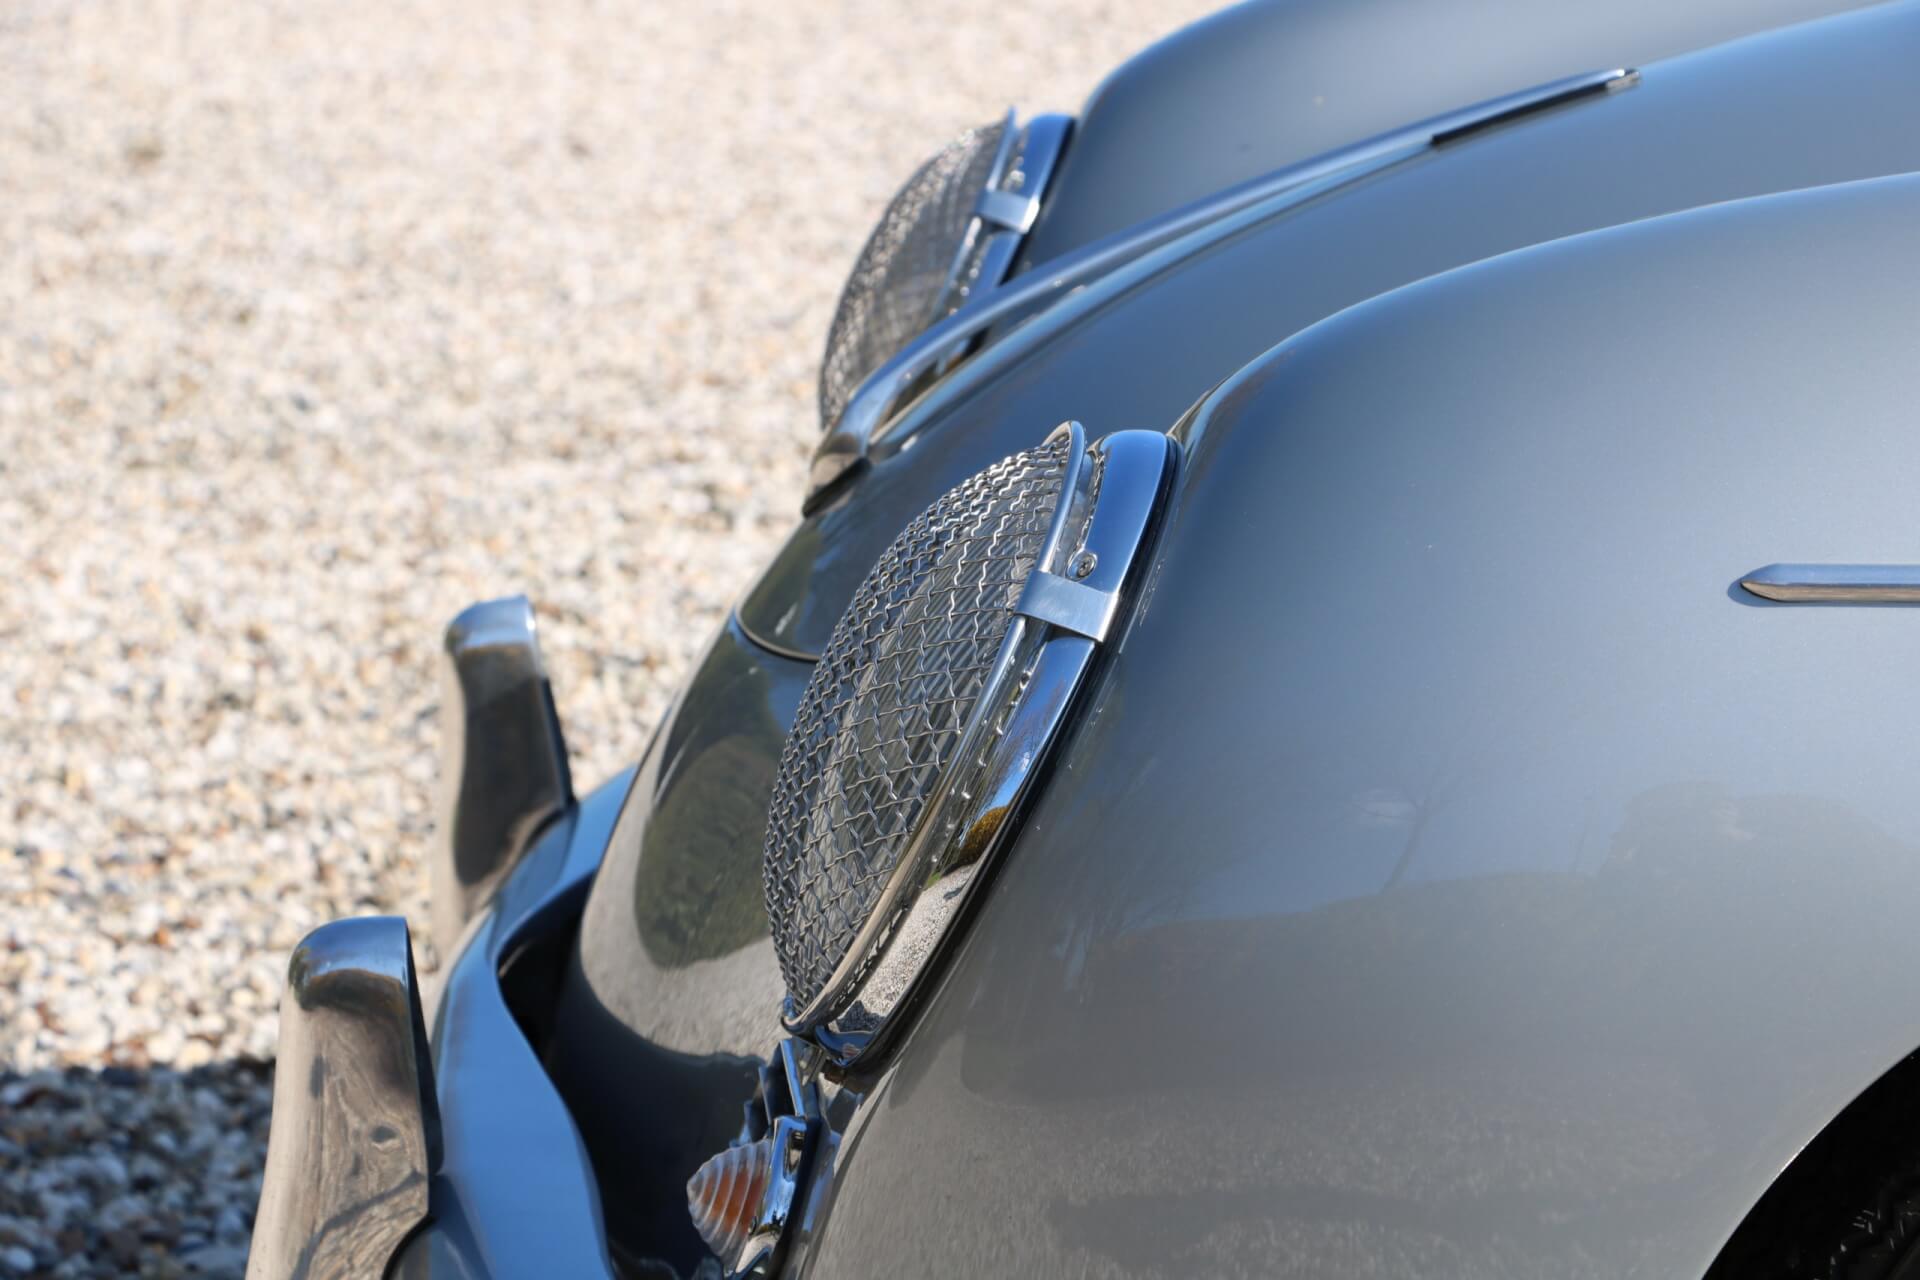 Real Art on Wheels | Porsche 356A Carrera Speedster